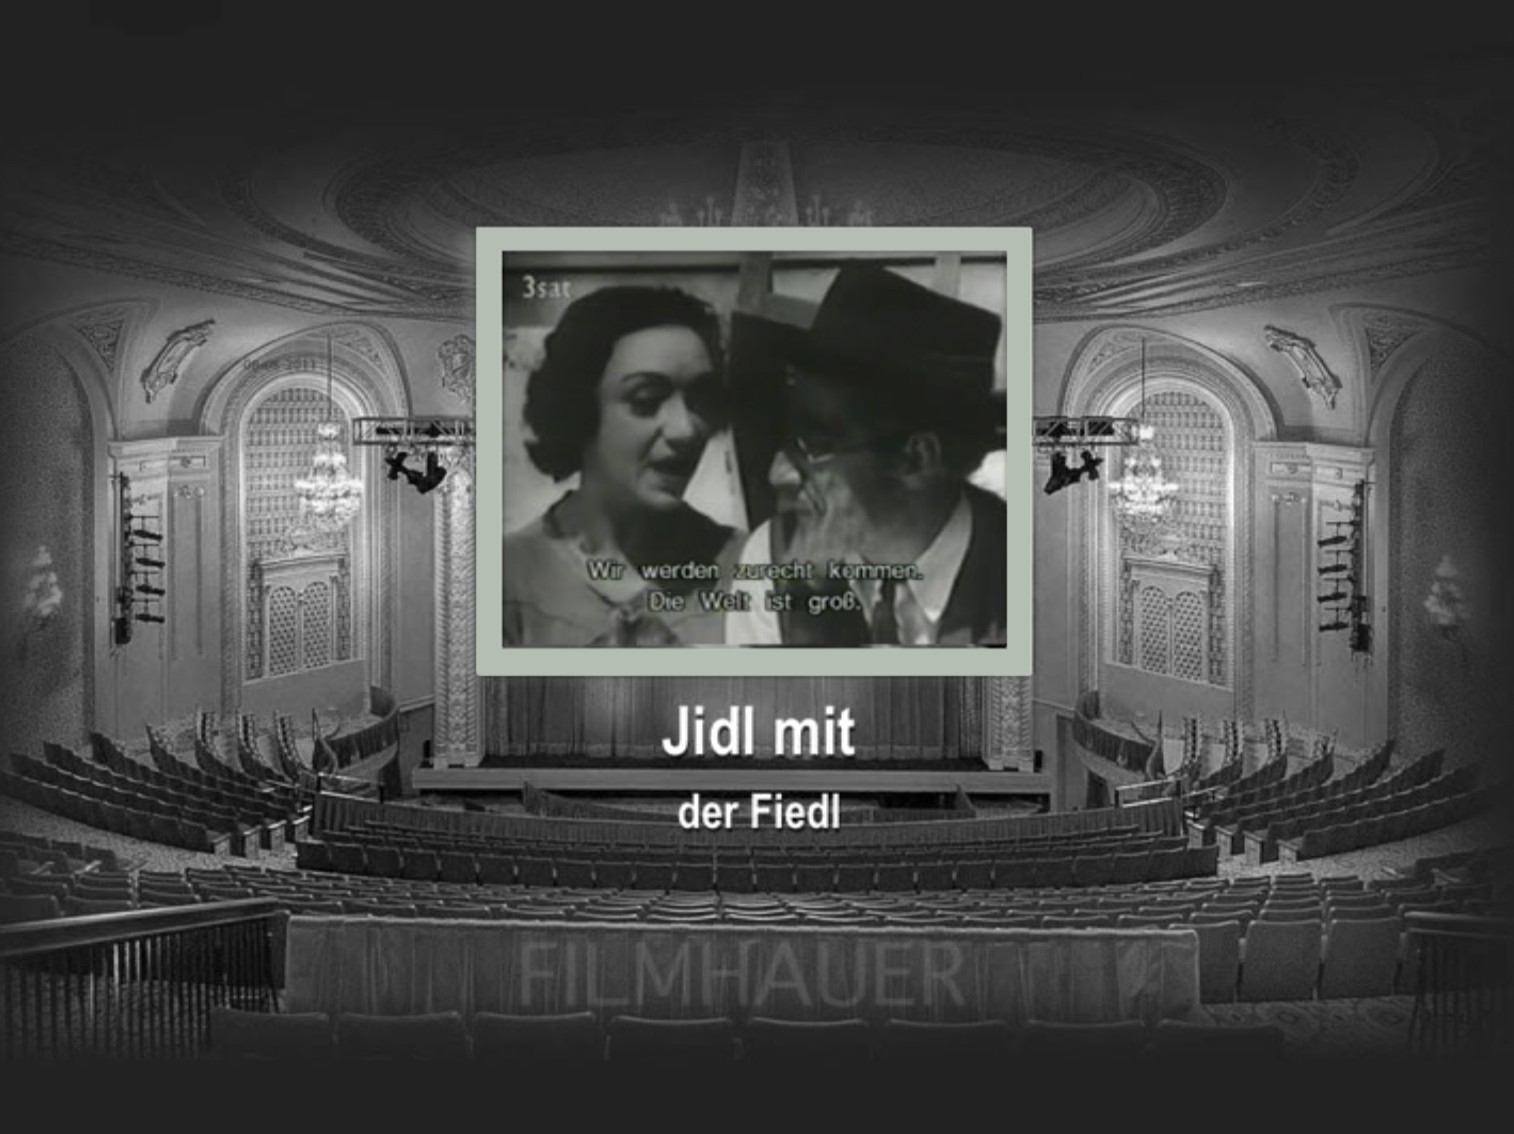 JIDL MIT DER FIEDEL - POLEN 1936 - JIDDISCH